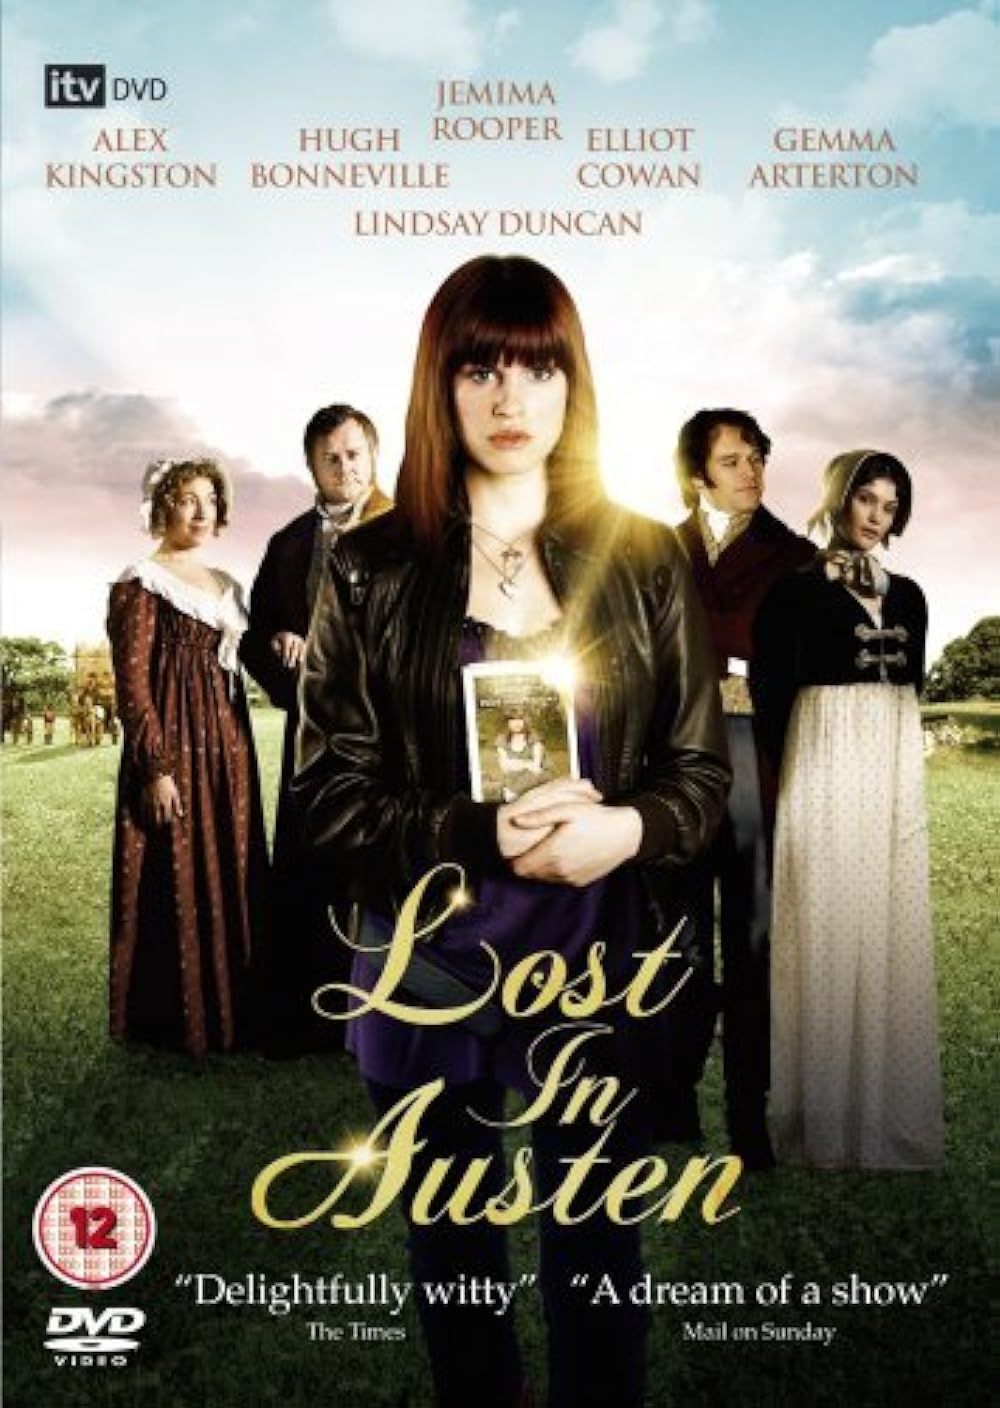 Alex Kingston, Hugh Bonneville, Jemima Rooper, Elliot Cowan, and Gemma Arterton in Lost in Austen (2008)